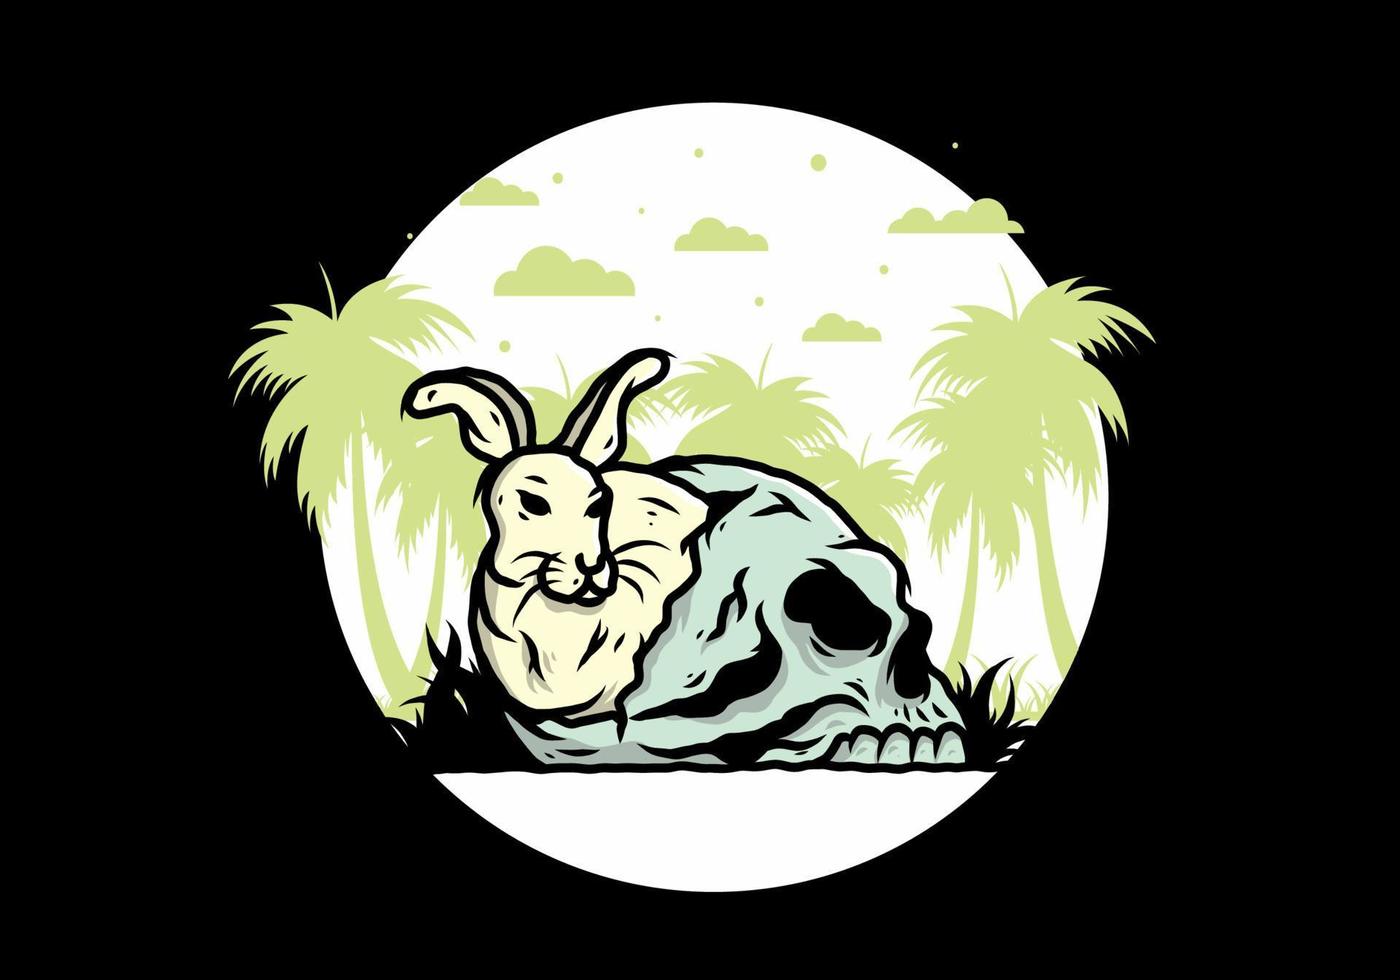 Rabbit hiding inside human skull illustration vector